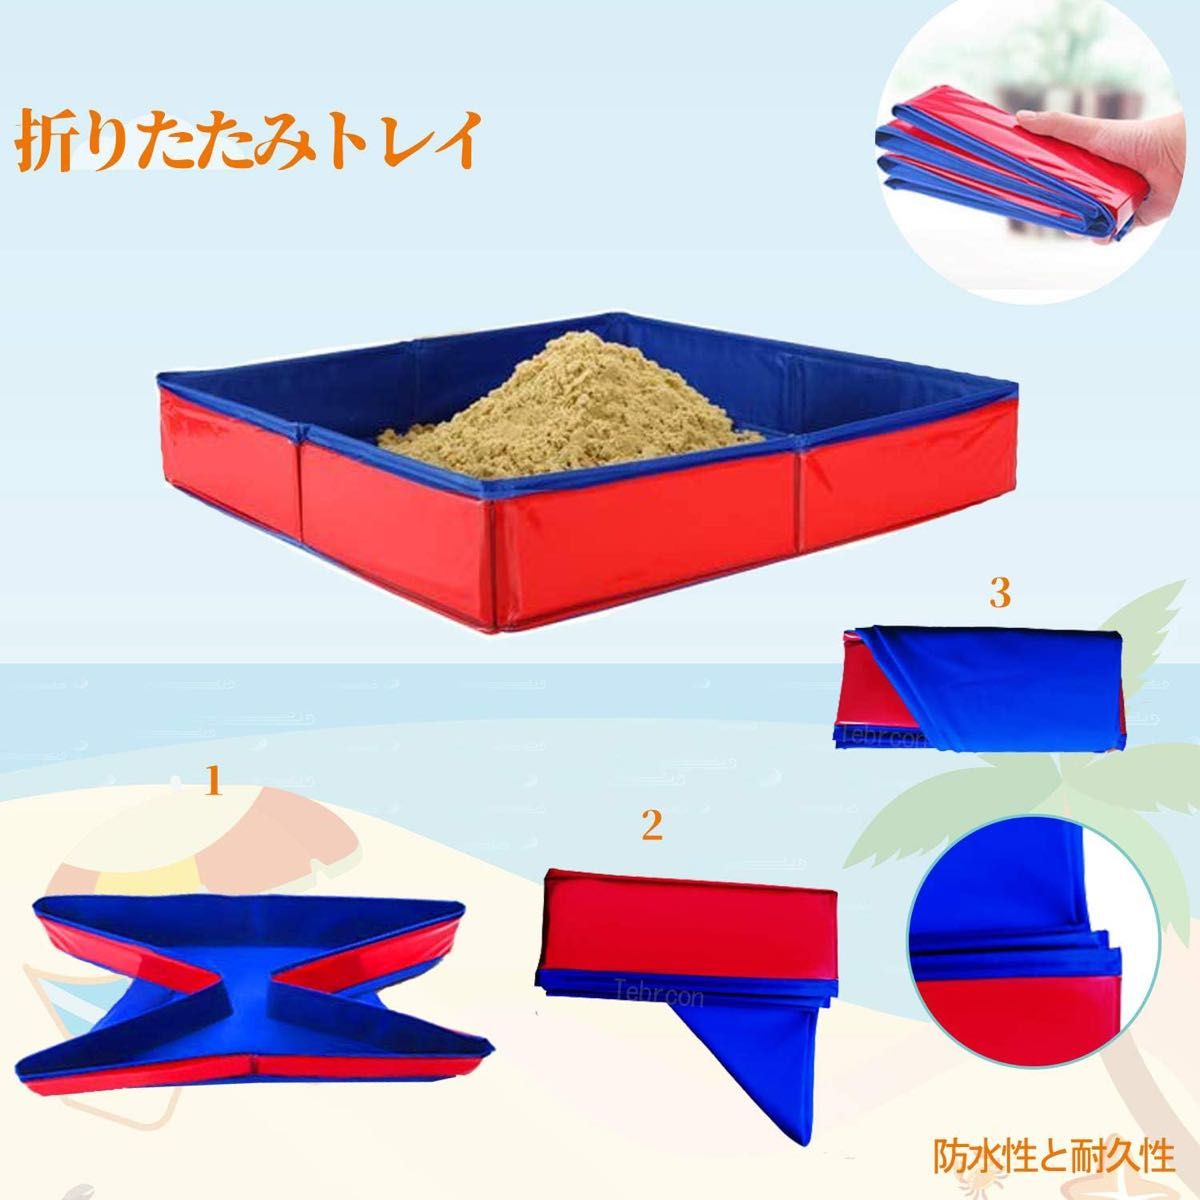 【823927】砂遊び おもちゃ 子供 室内遊び DIY 砂粘土